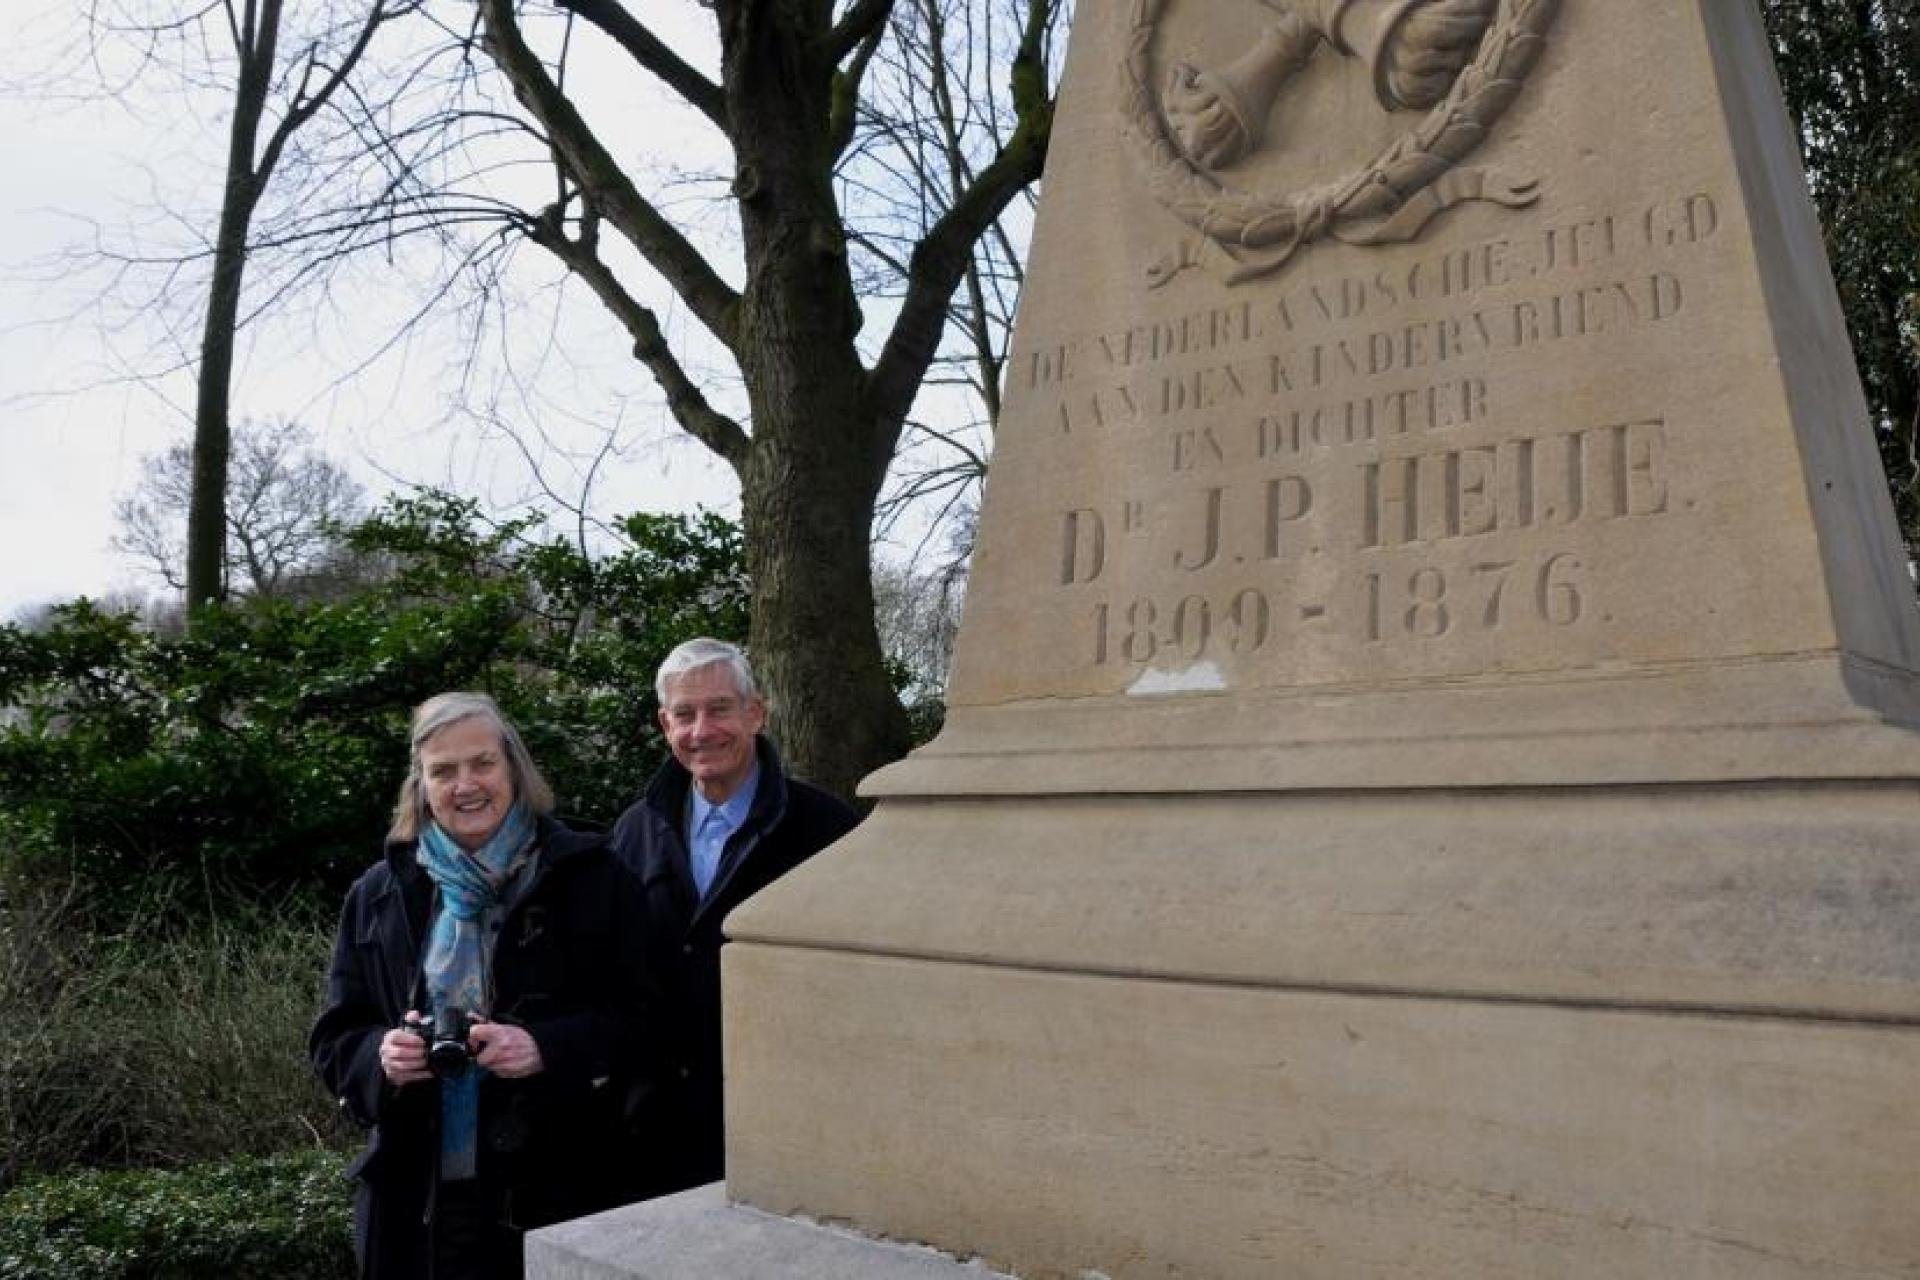 De achter-achterkleinzoon van Jan Pieter Heije, Wil. Hubertus en zijn vrouw Gesine Daniels bij het graf van J.P. Heije.